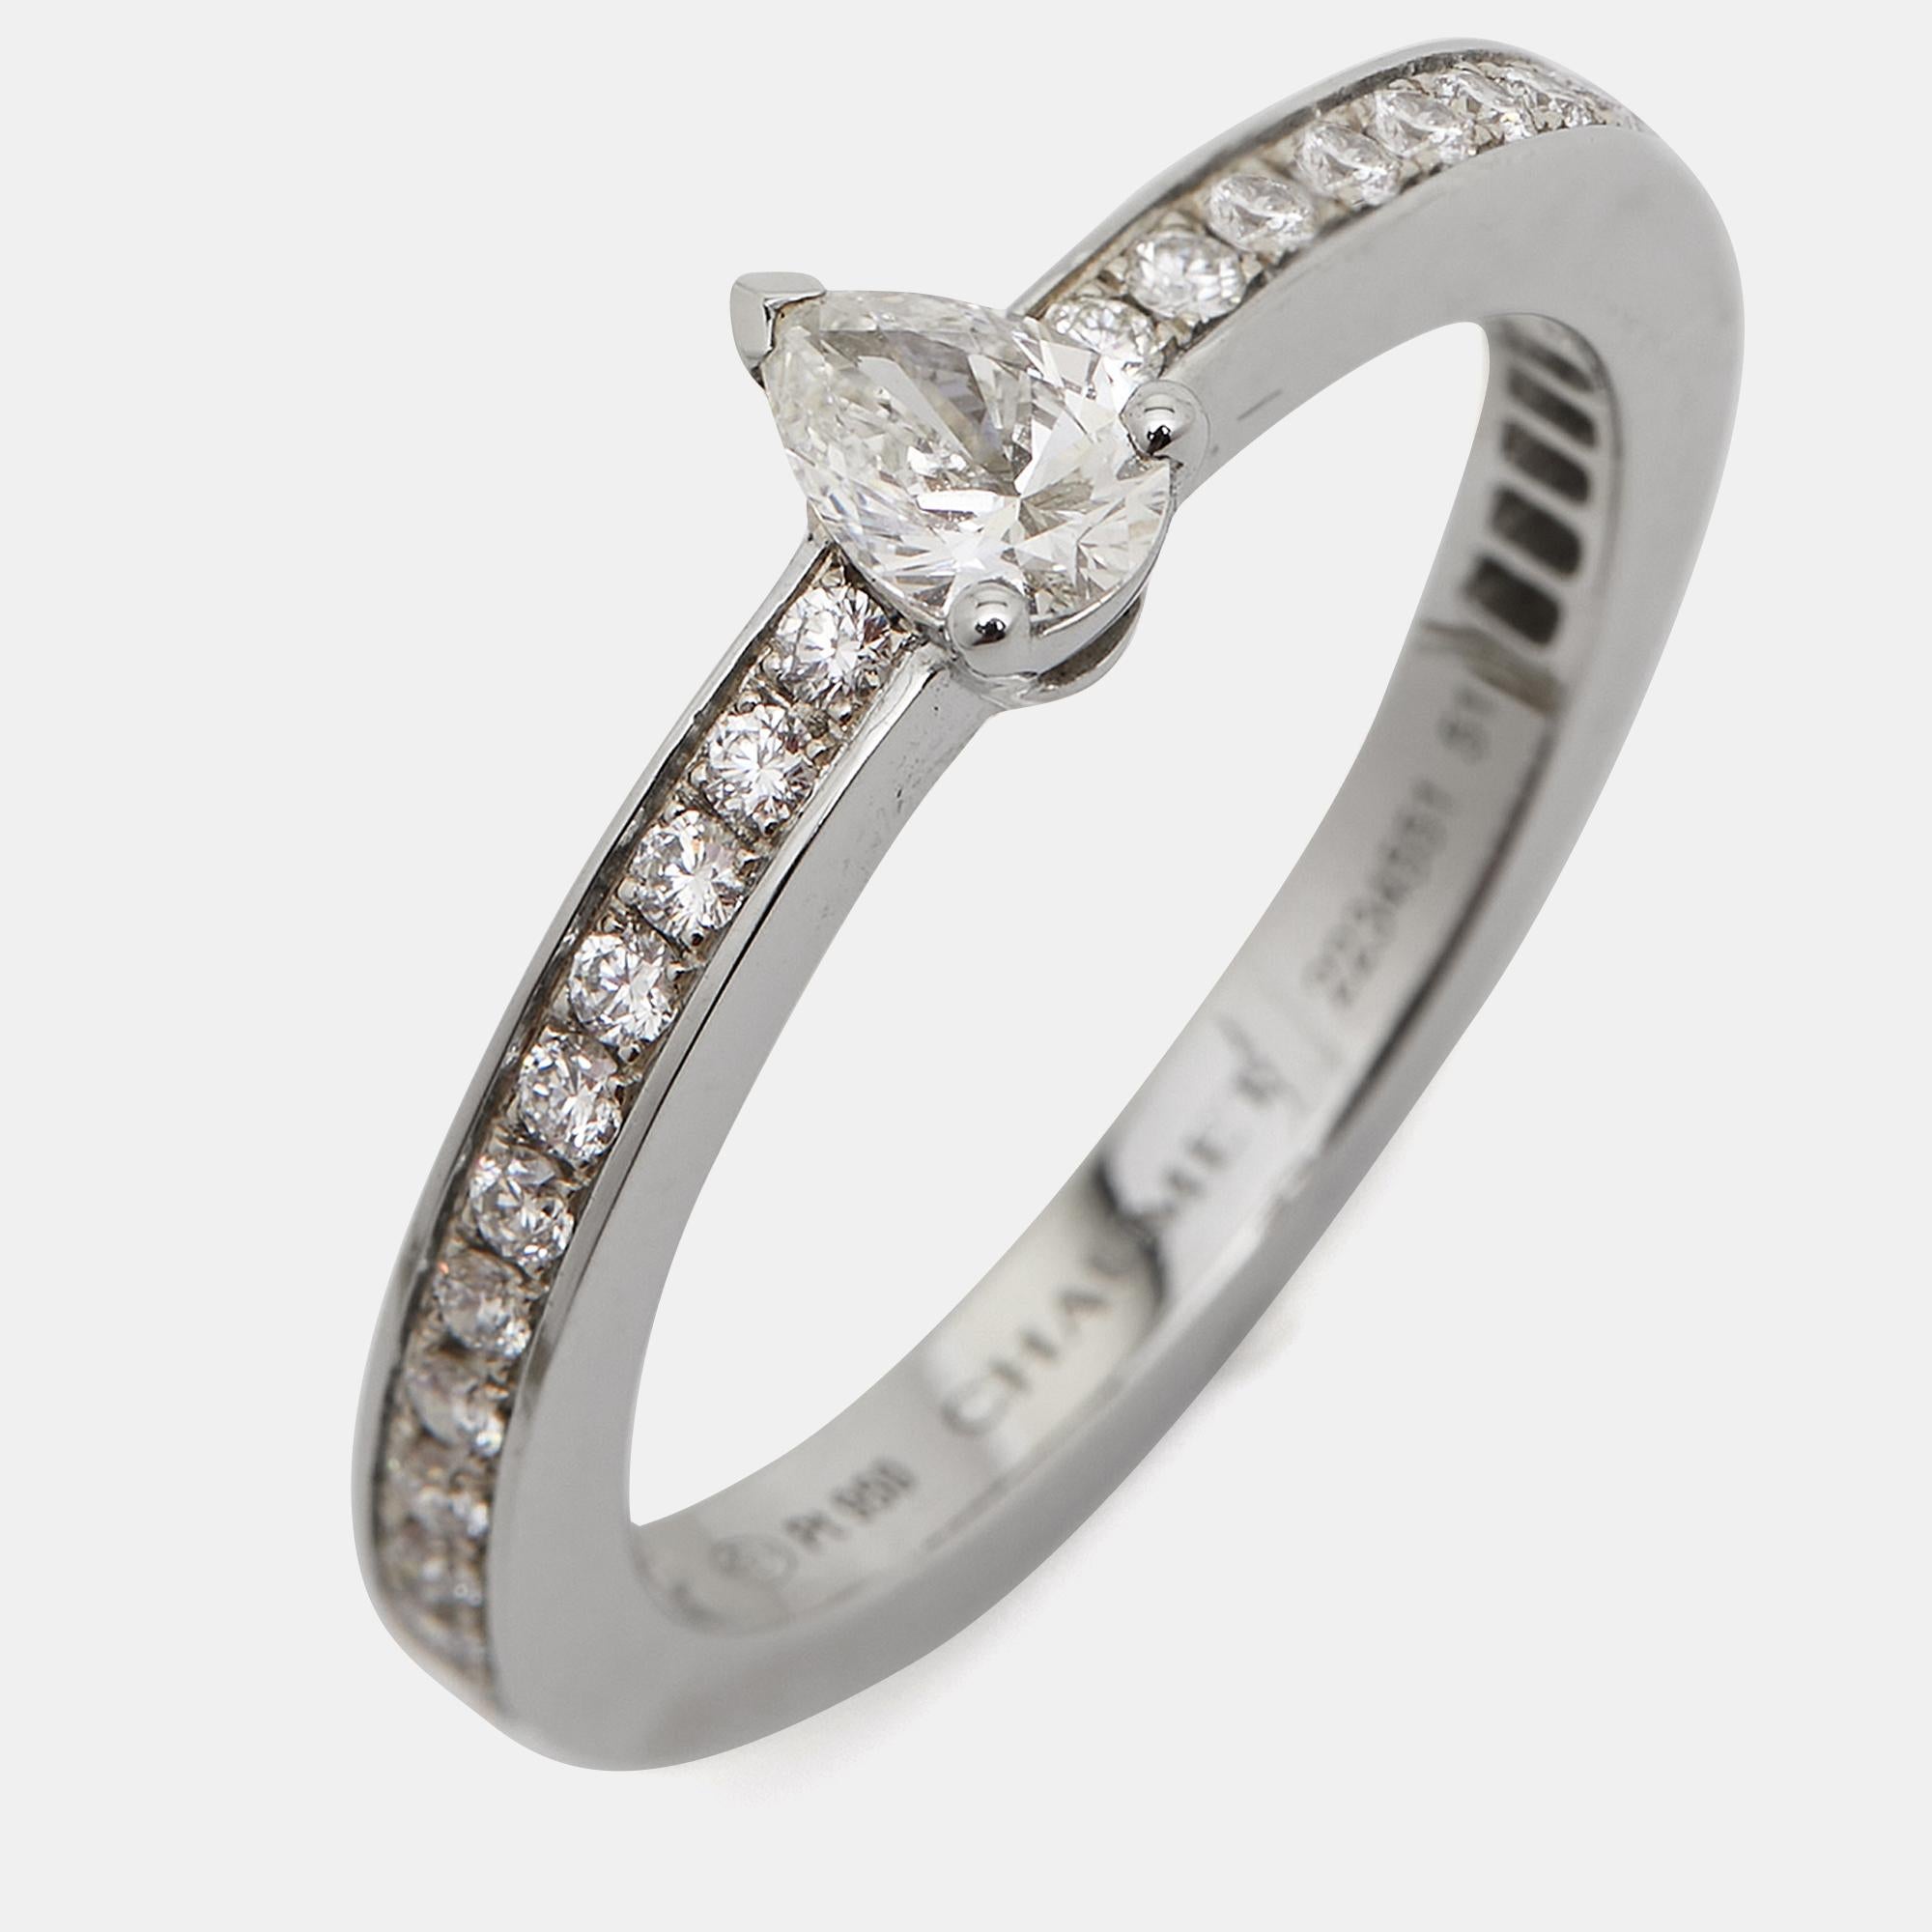 Women's Chaumet Triomphe de Chaumet Diamond Platinum Ring Size 51